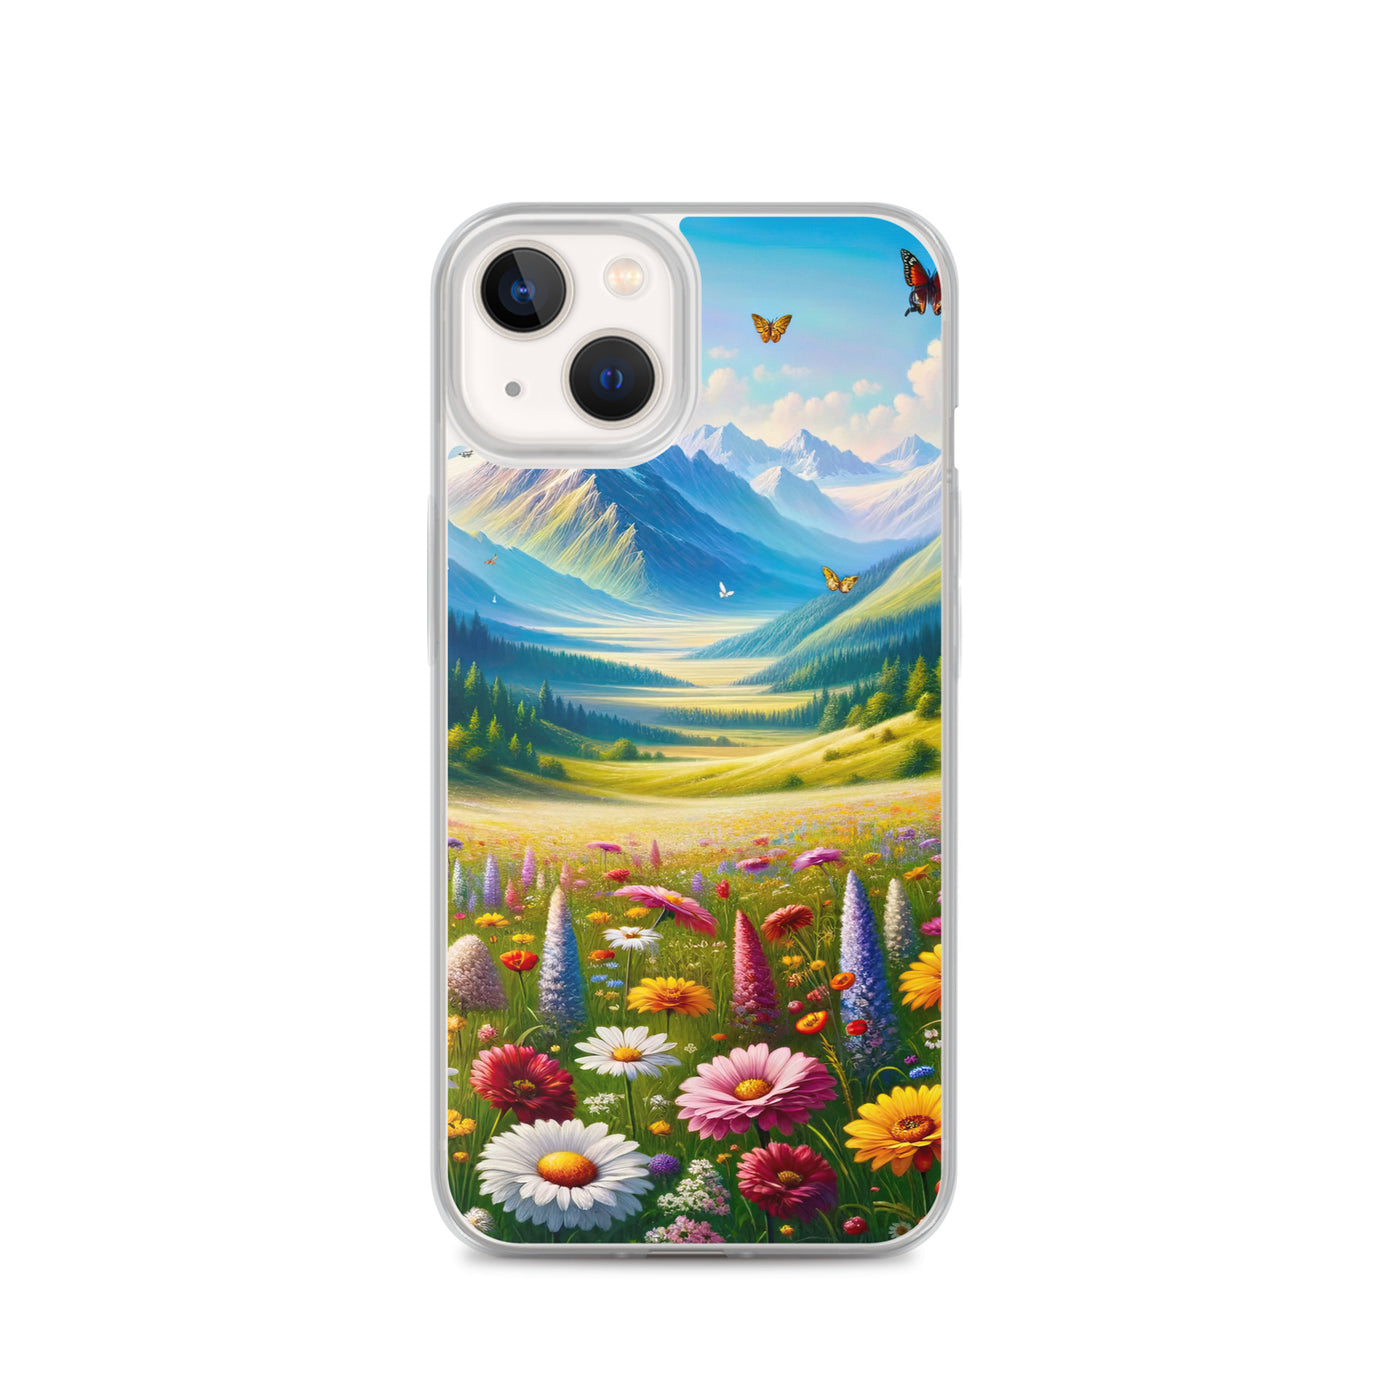 Ölgemälde einer ruhigen Almwiese, Oase mit bunter Wildblumenpracht - iPhone Schutzhülle (durchsichtig) camping xxx yyy zzz iPhone 13